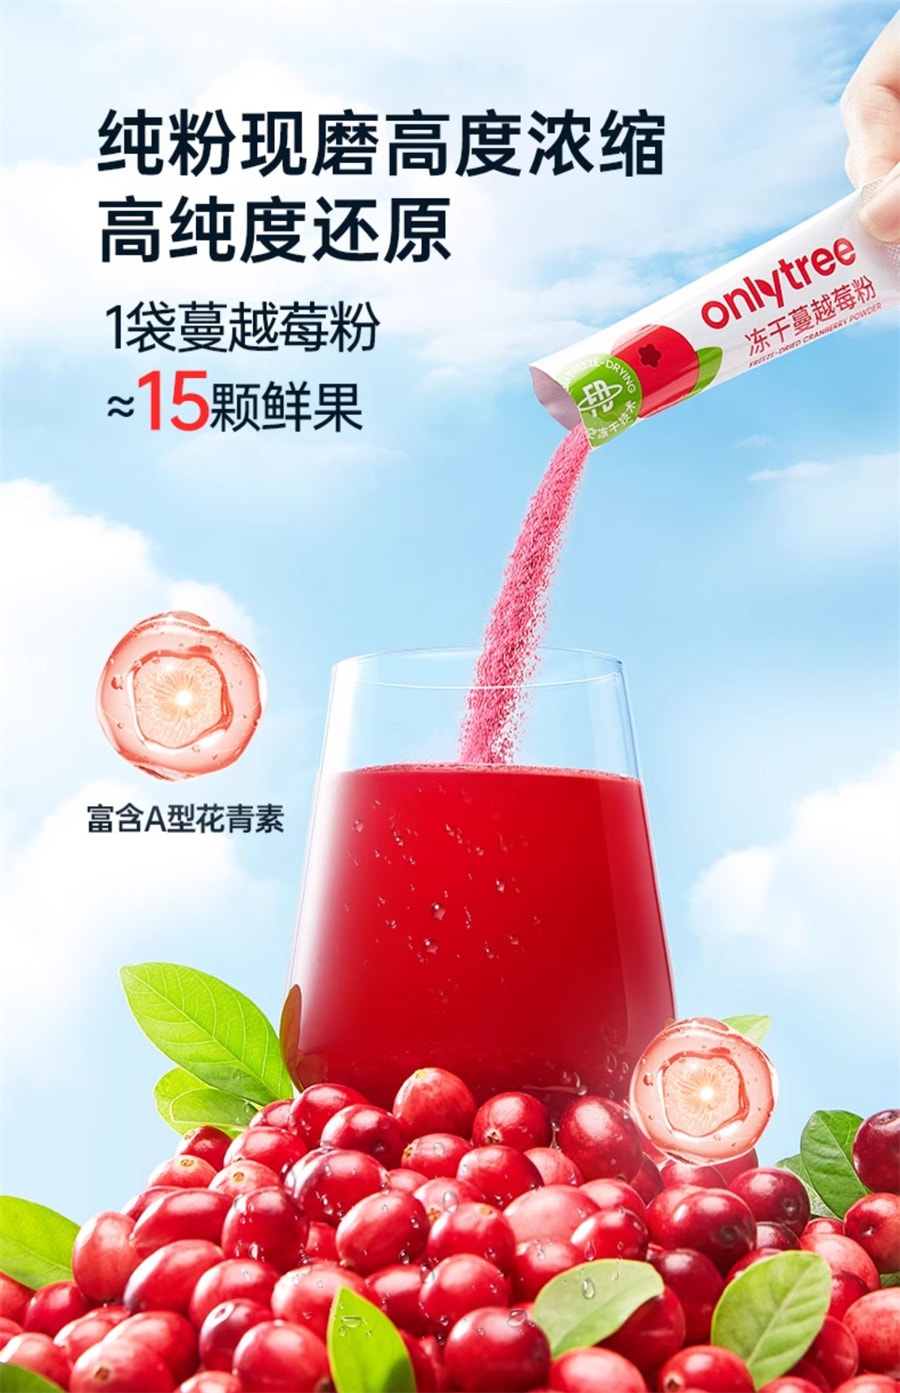 【中国直邮】onlytree  冻干纯蔓越莓粉高浓缩呵护女性健康含原花青素  10袋/盒